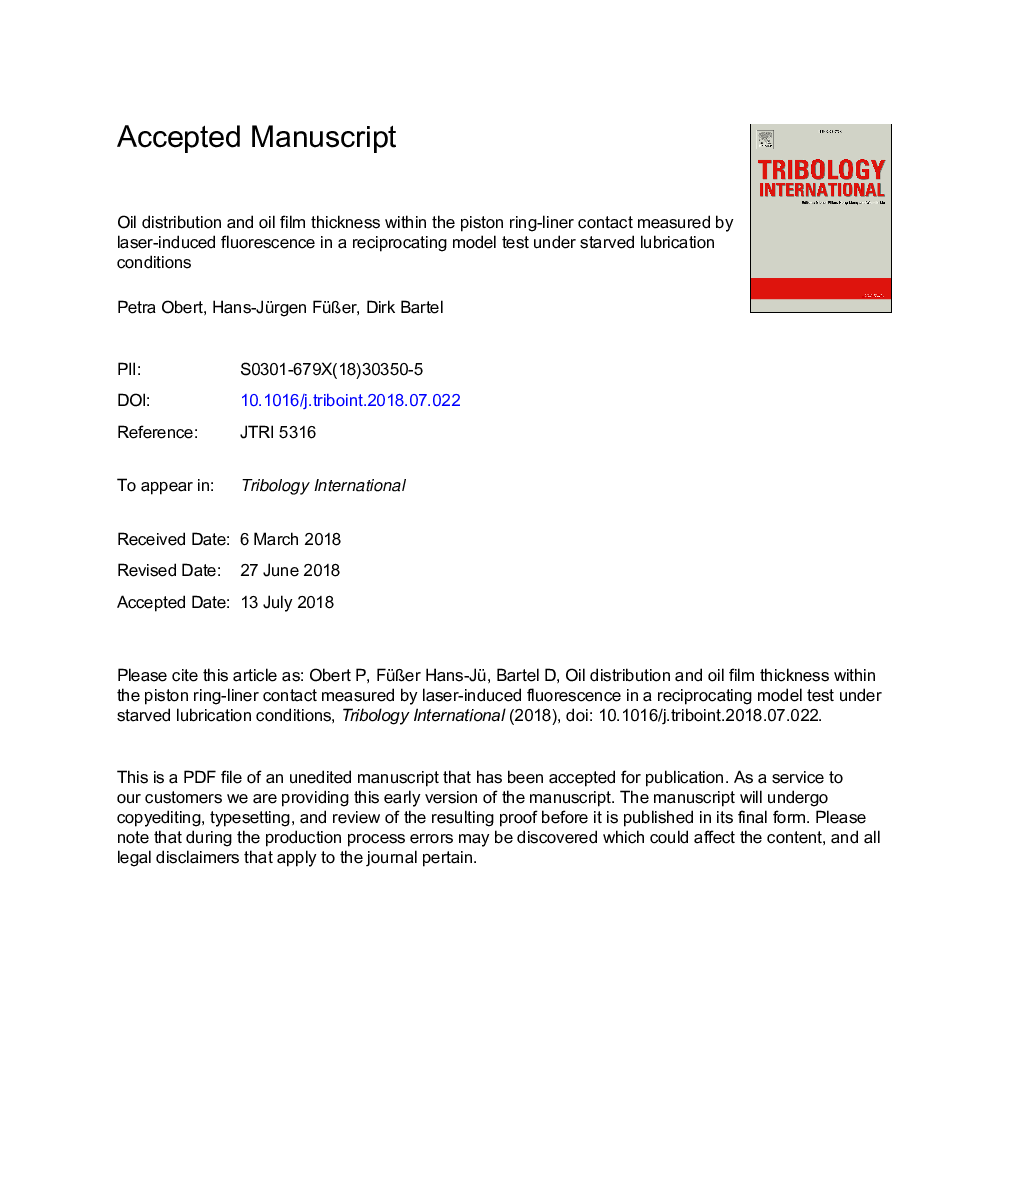 توزیع روغن و ضخامت فیلم روغن در داخل حلقه لاینر پیستونی، اندازه گیری شده توسط فلورسانس ناشی از لیزر در یک آزمون تطبیقی ​​مجدد تحت شرایط روانکاری گرسنه